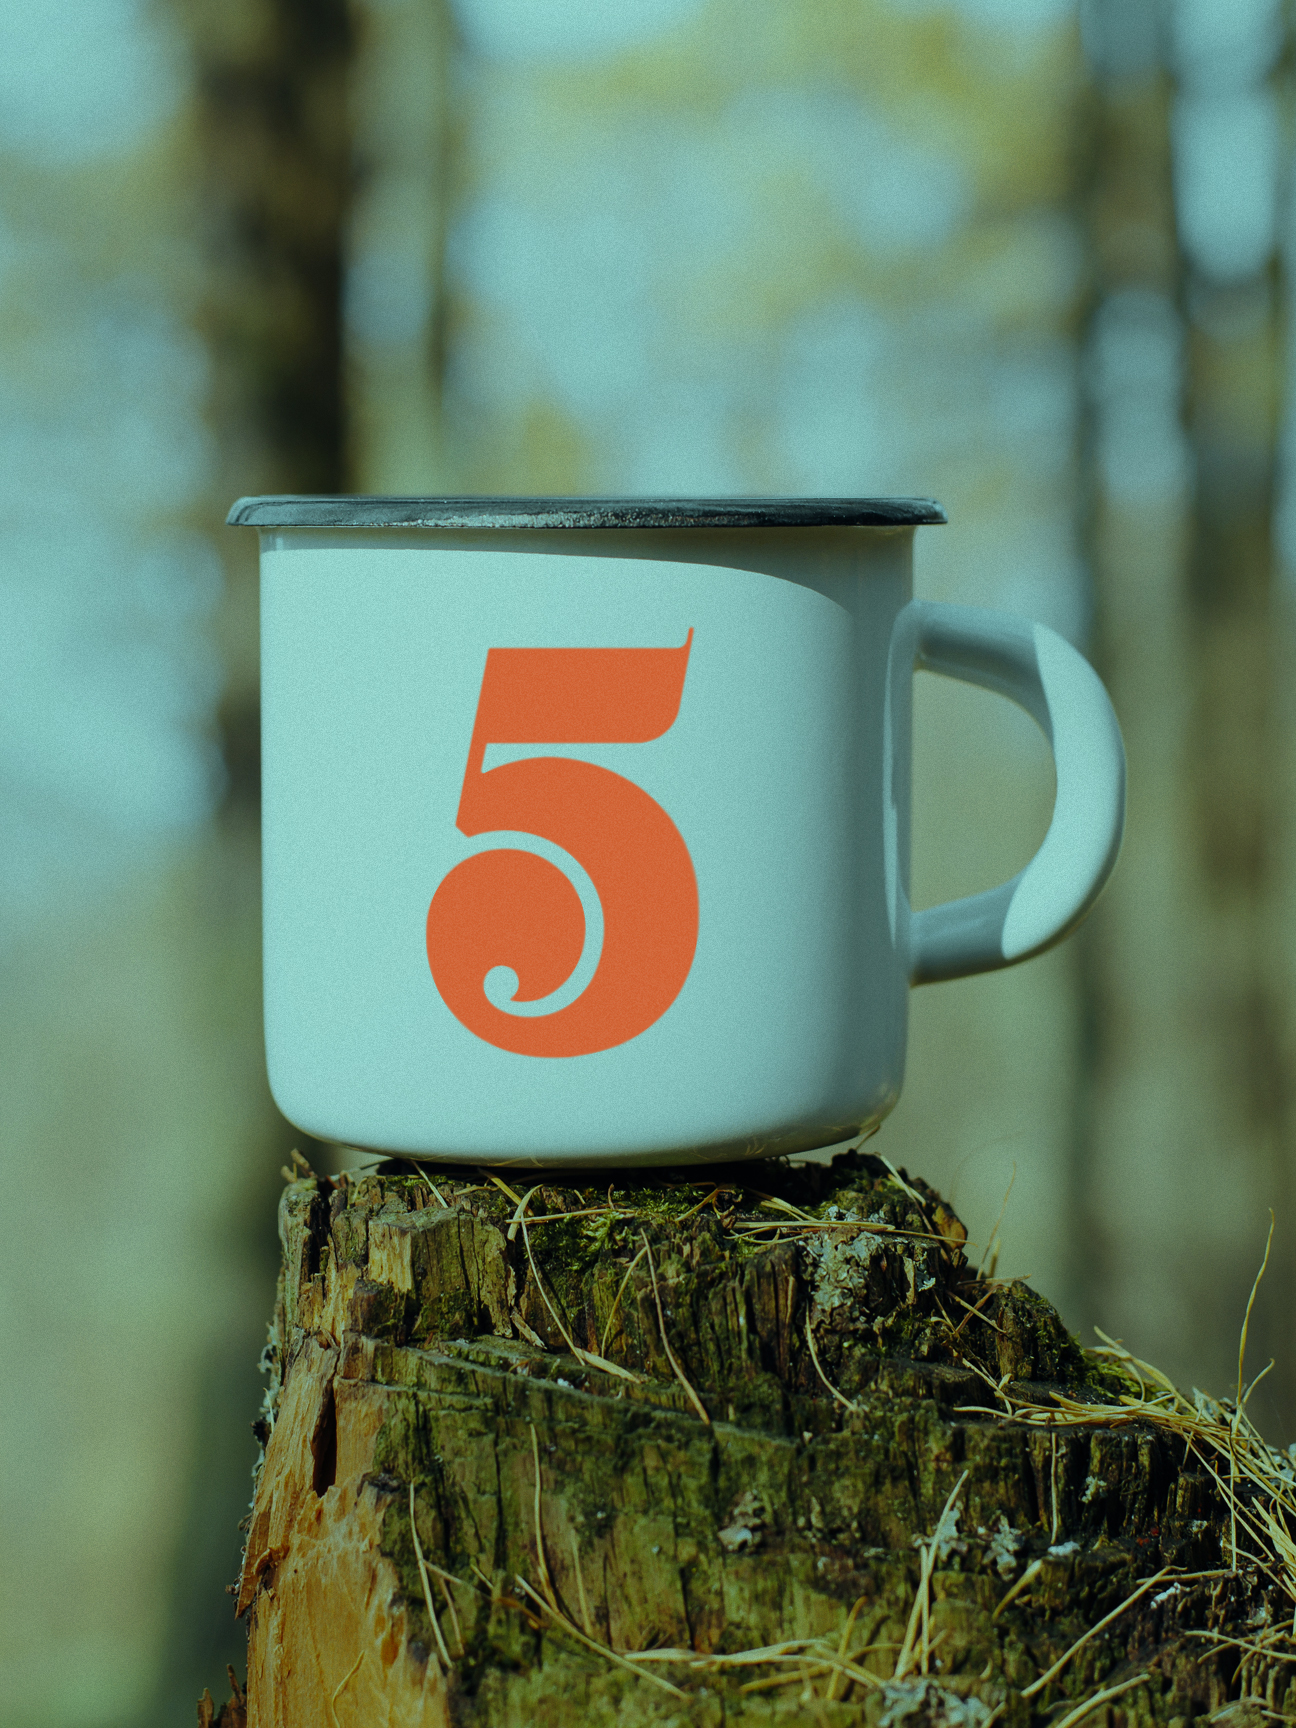 5 Tides camp mug sitting on rotted tree stump